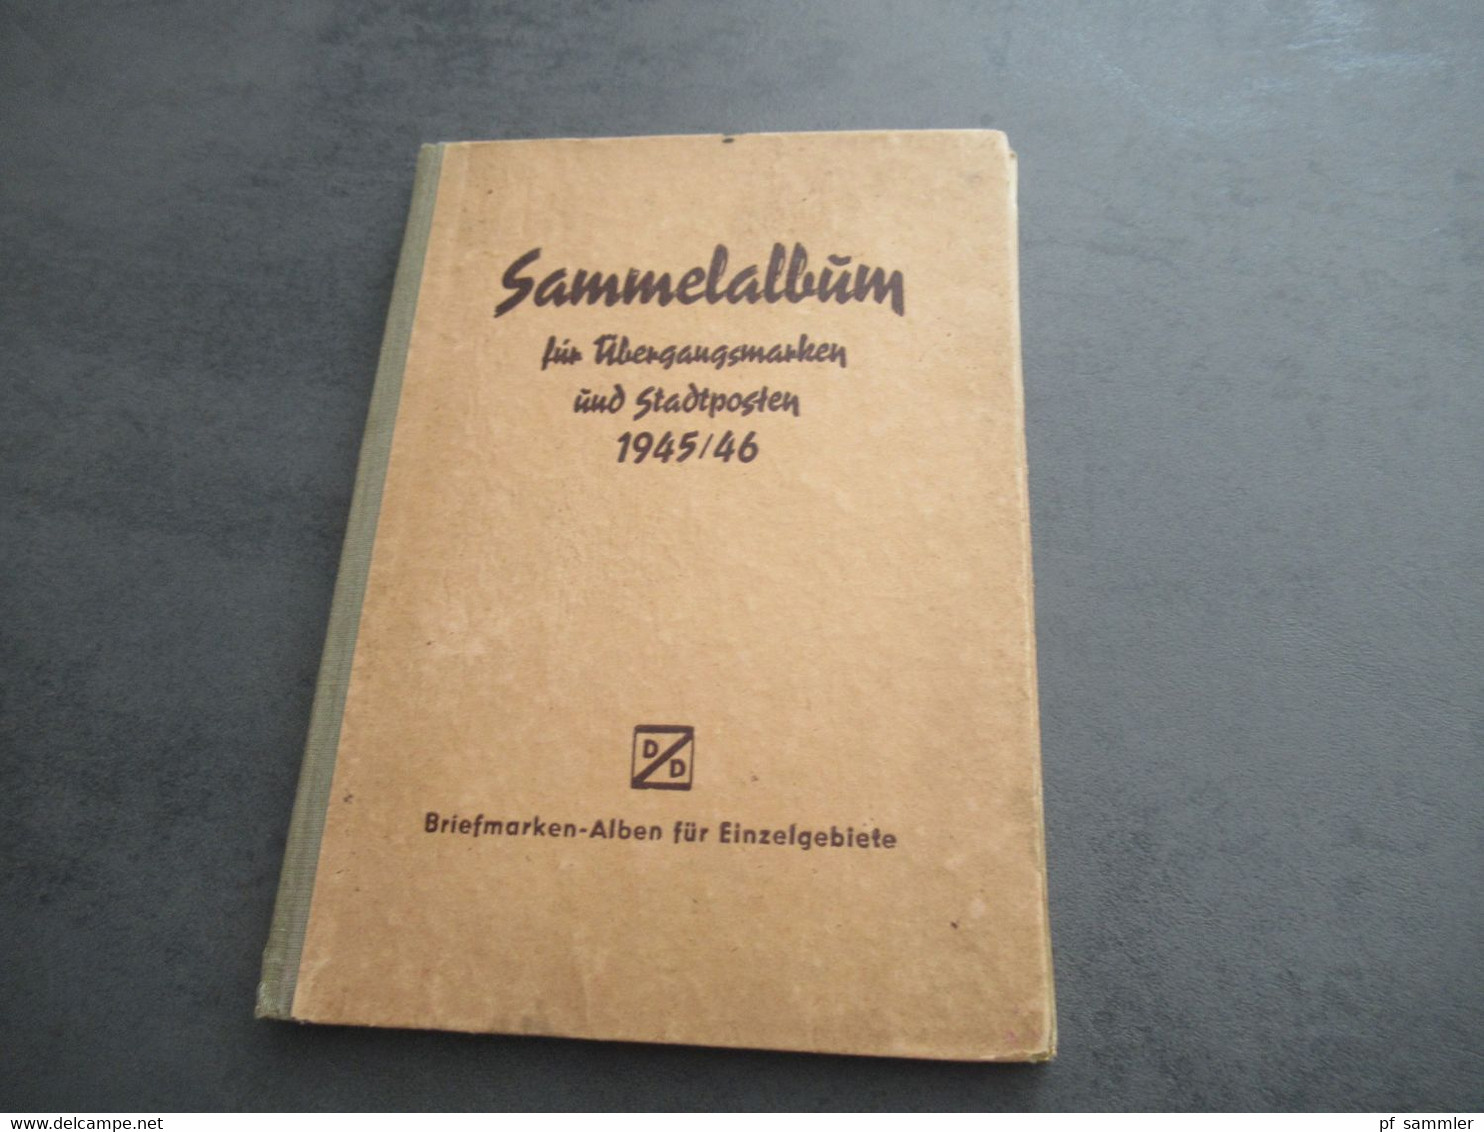 Sammelalbum Für Übergangsmarken Und Stadtposten 1945 / 46 D/D Briefmarken-Alben Für Einzelgebiete - Sammlungen (im Alben)